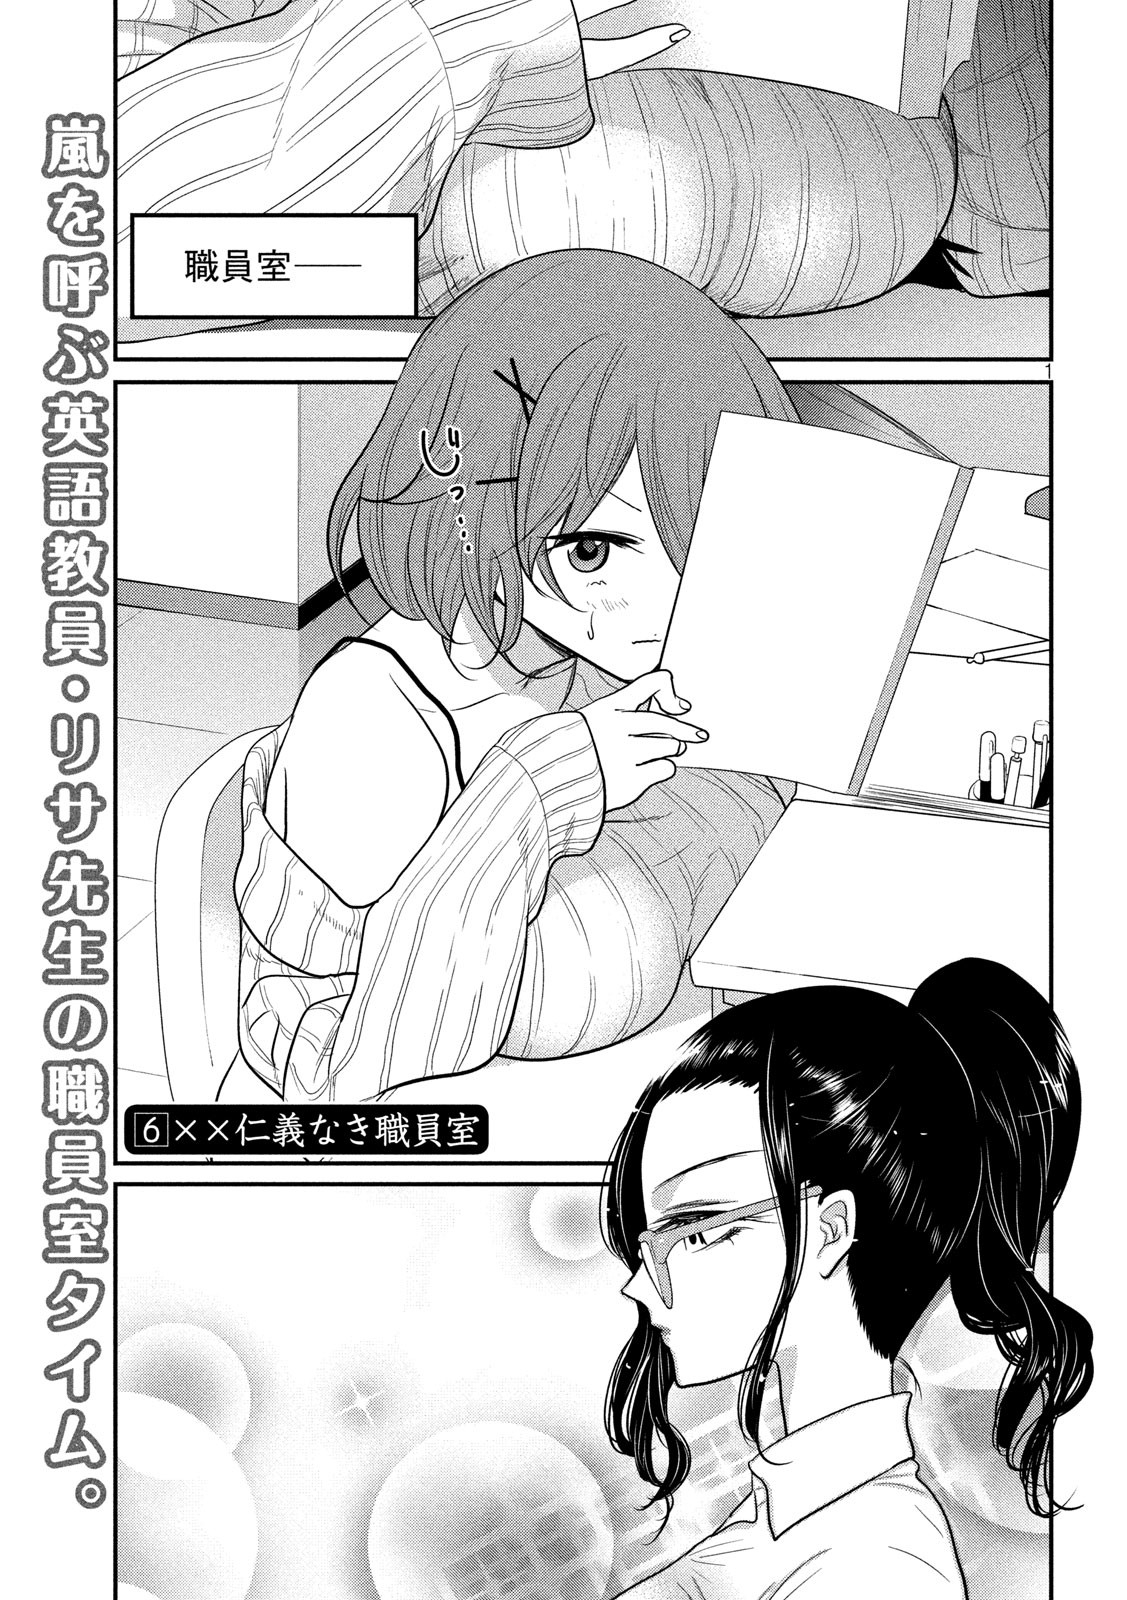 Eigo ×× Sensei - Chapter 6 - Page 1